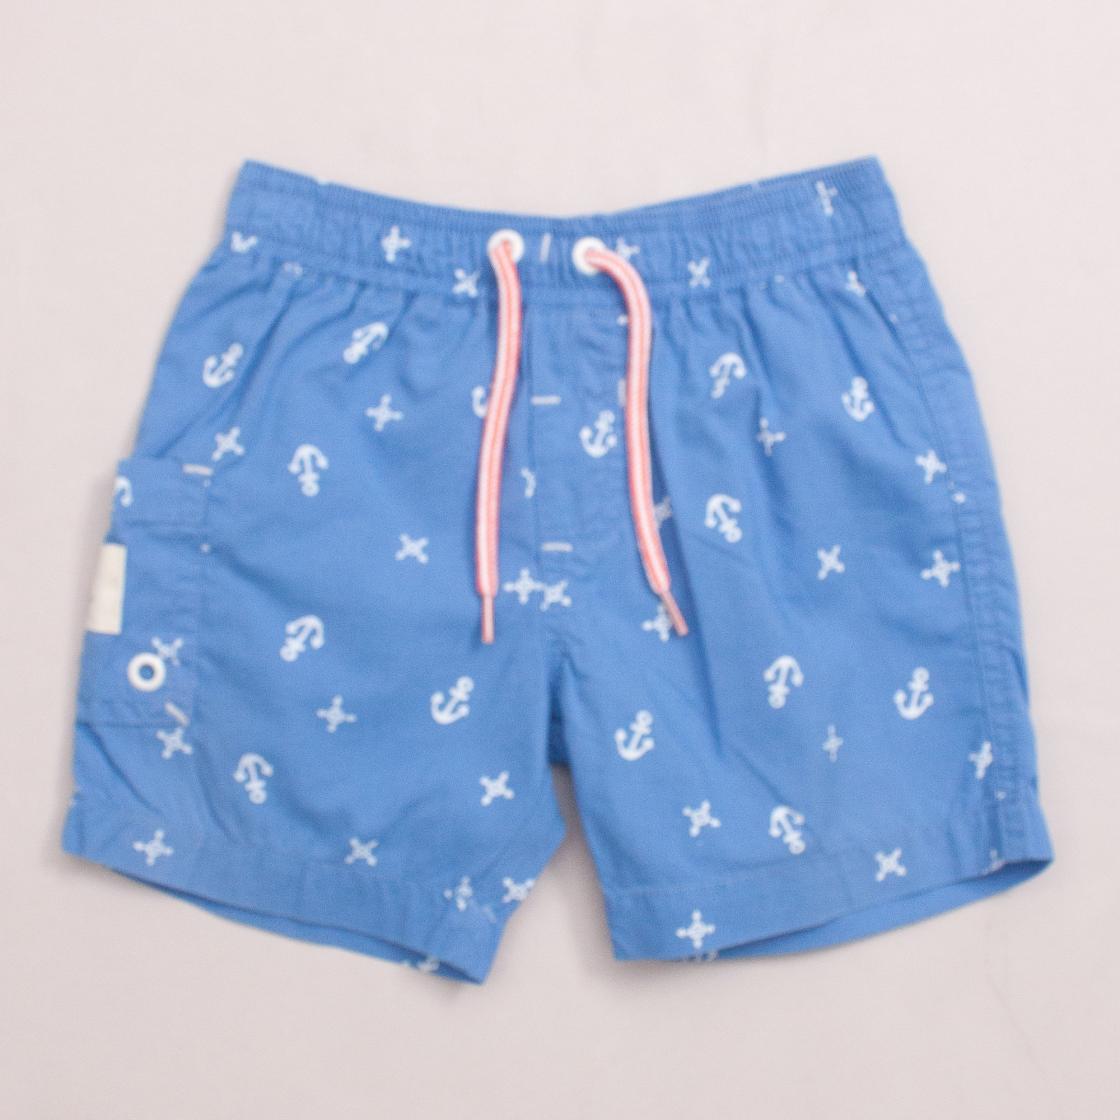 Purebaby Anchor Shorts